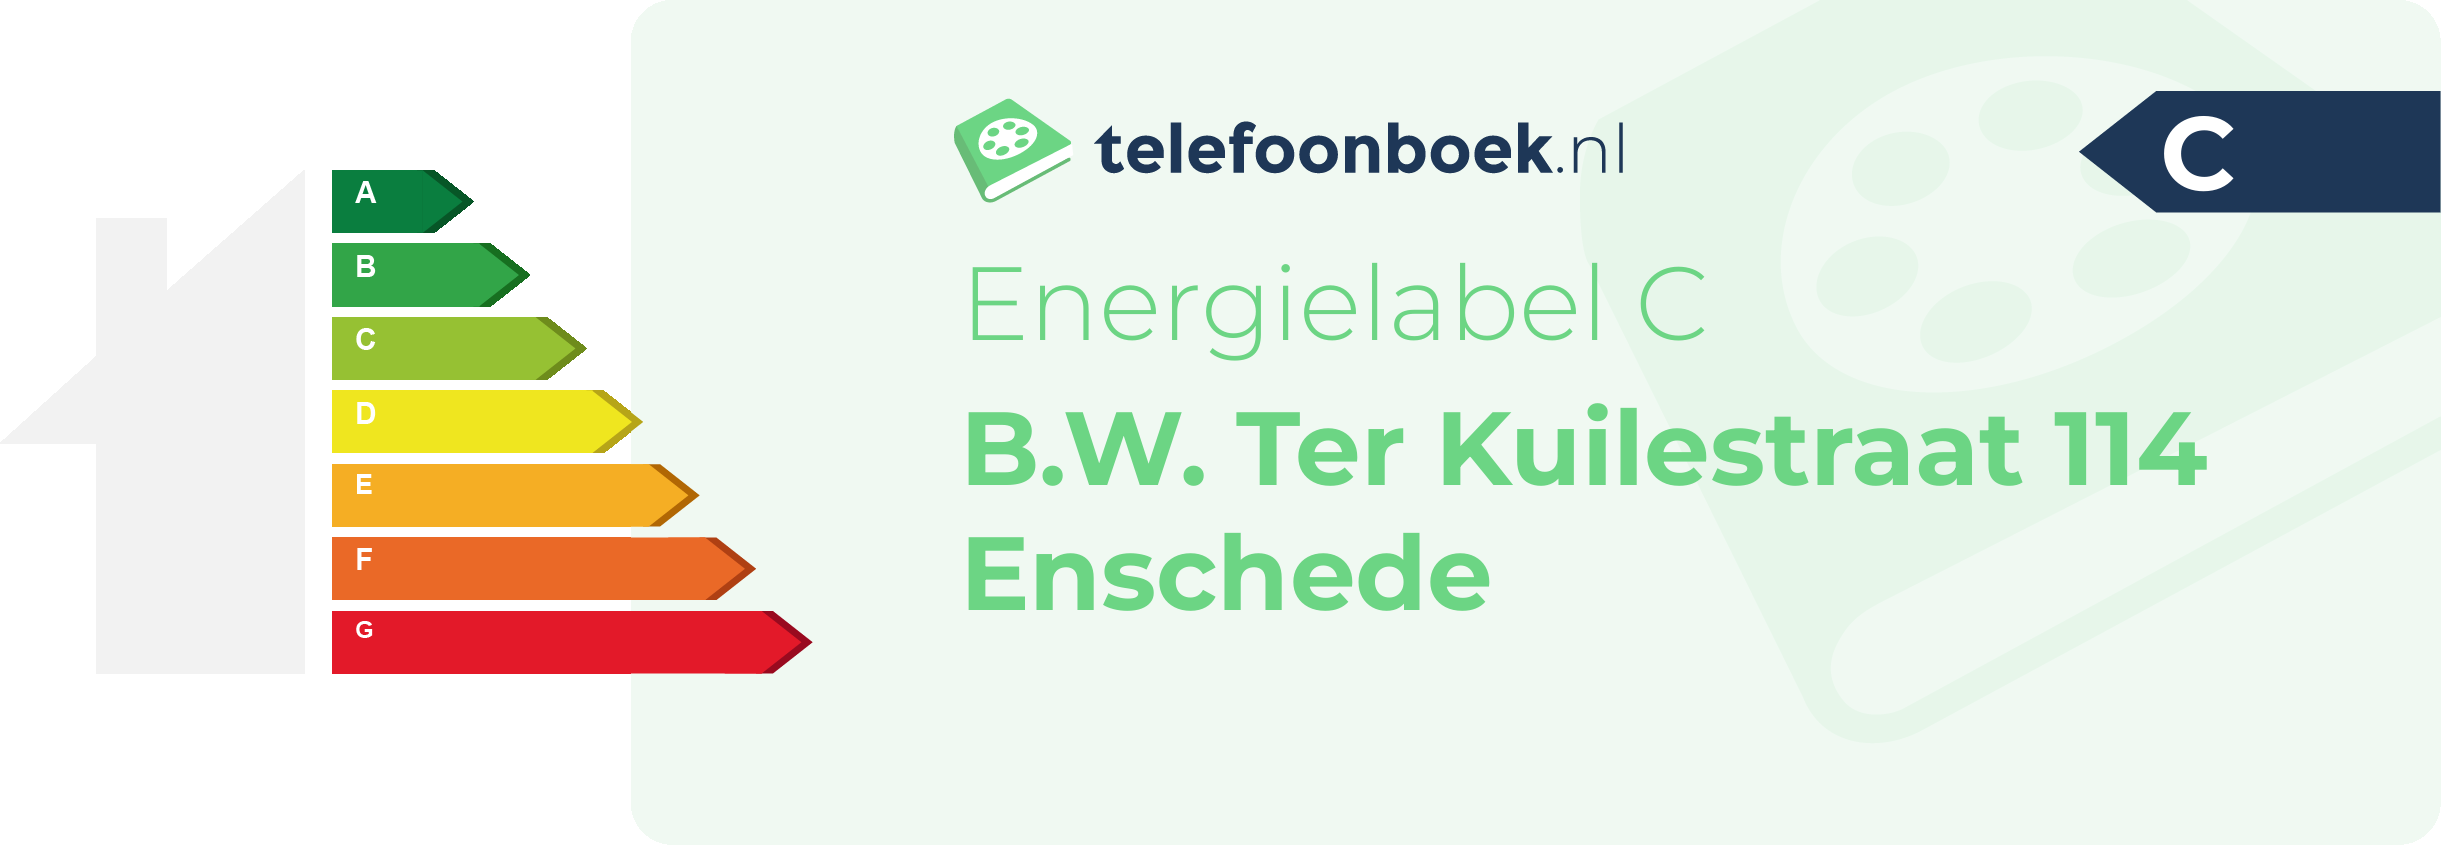 Energielabel B.W. Ter Kuilestraat 114 Enschede